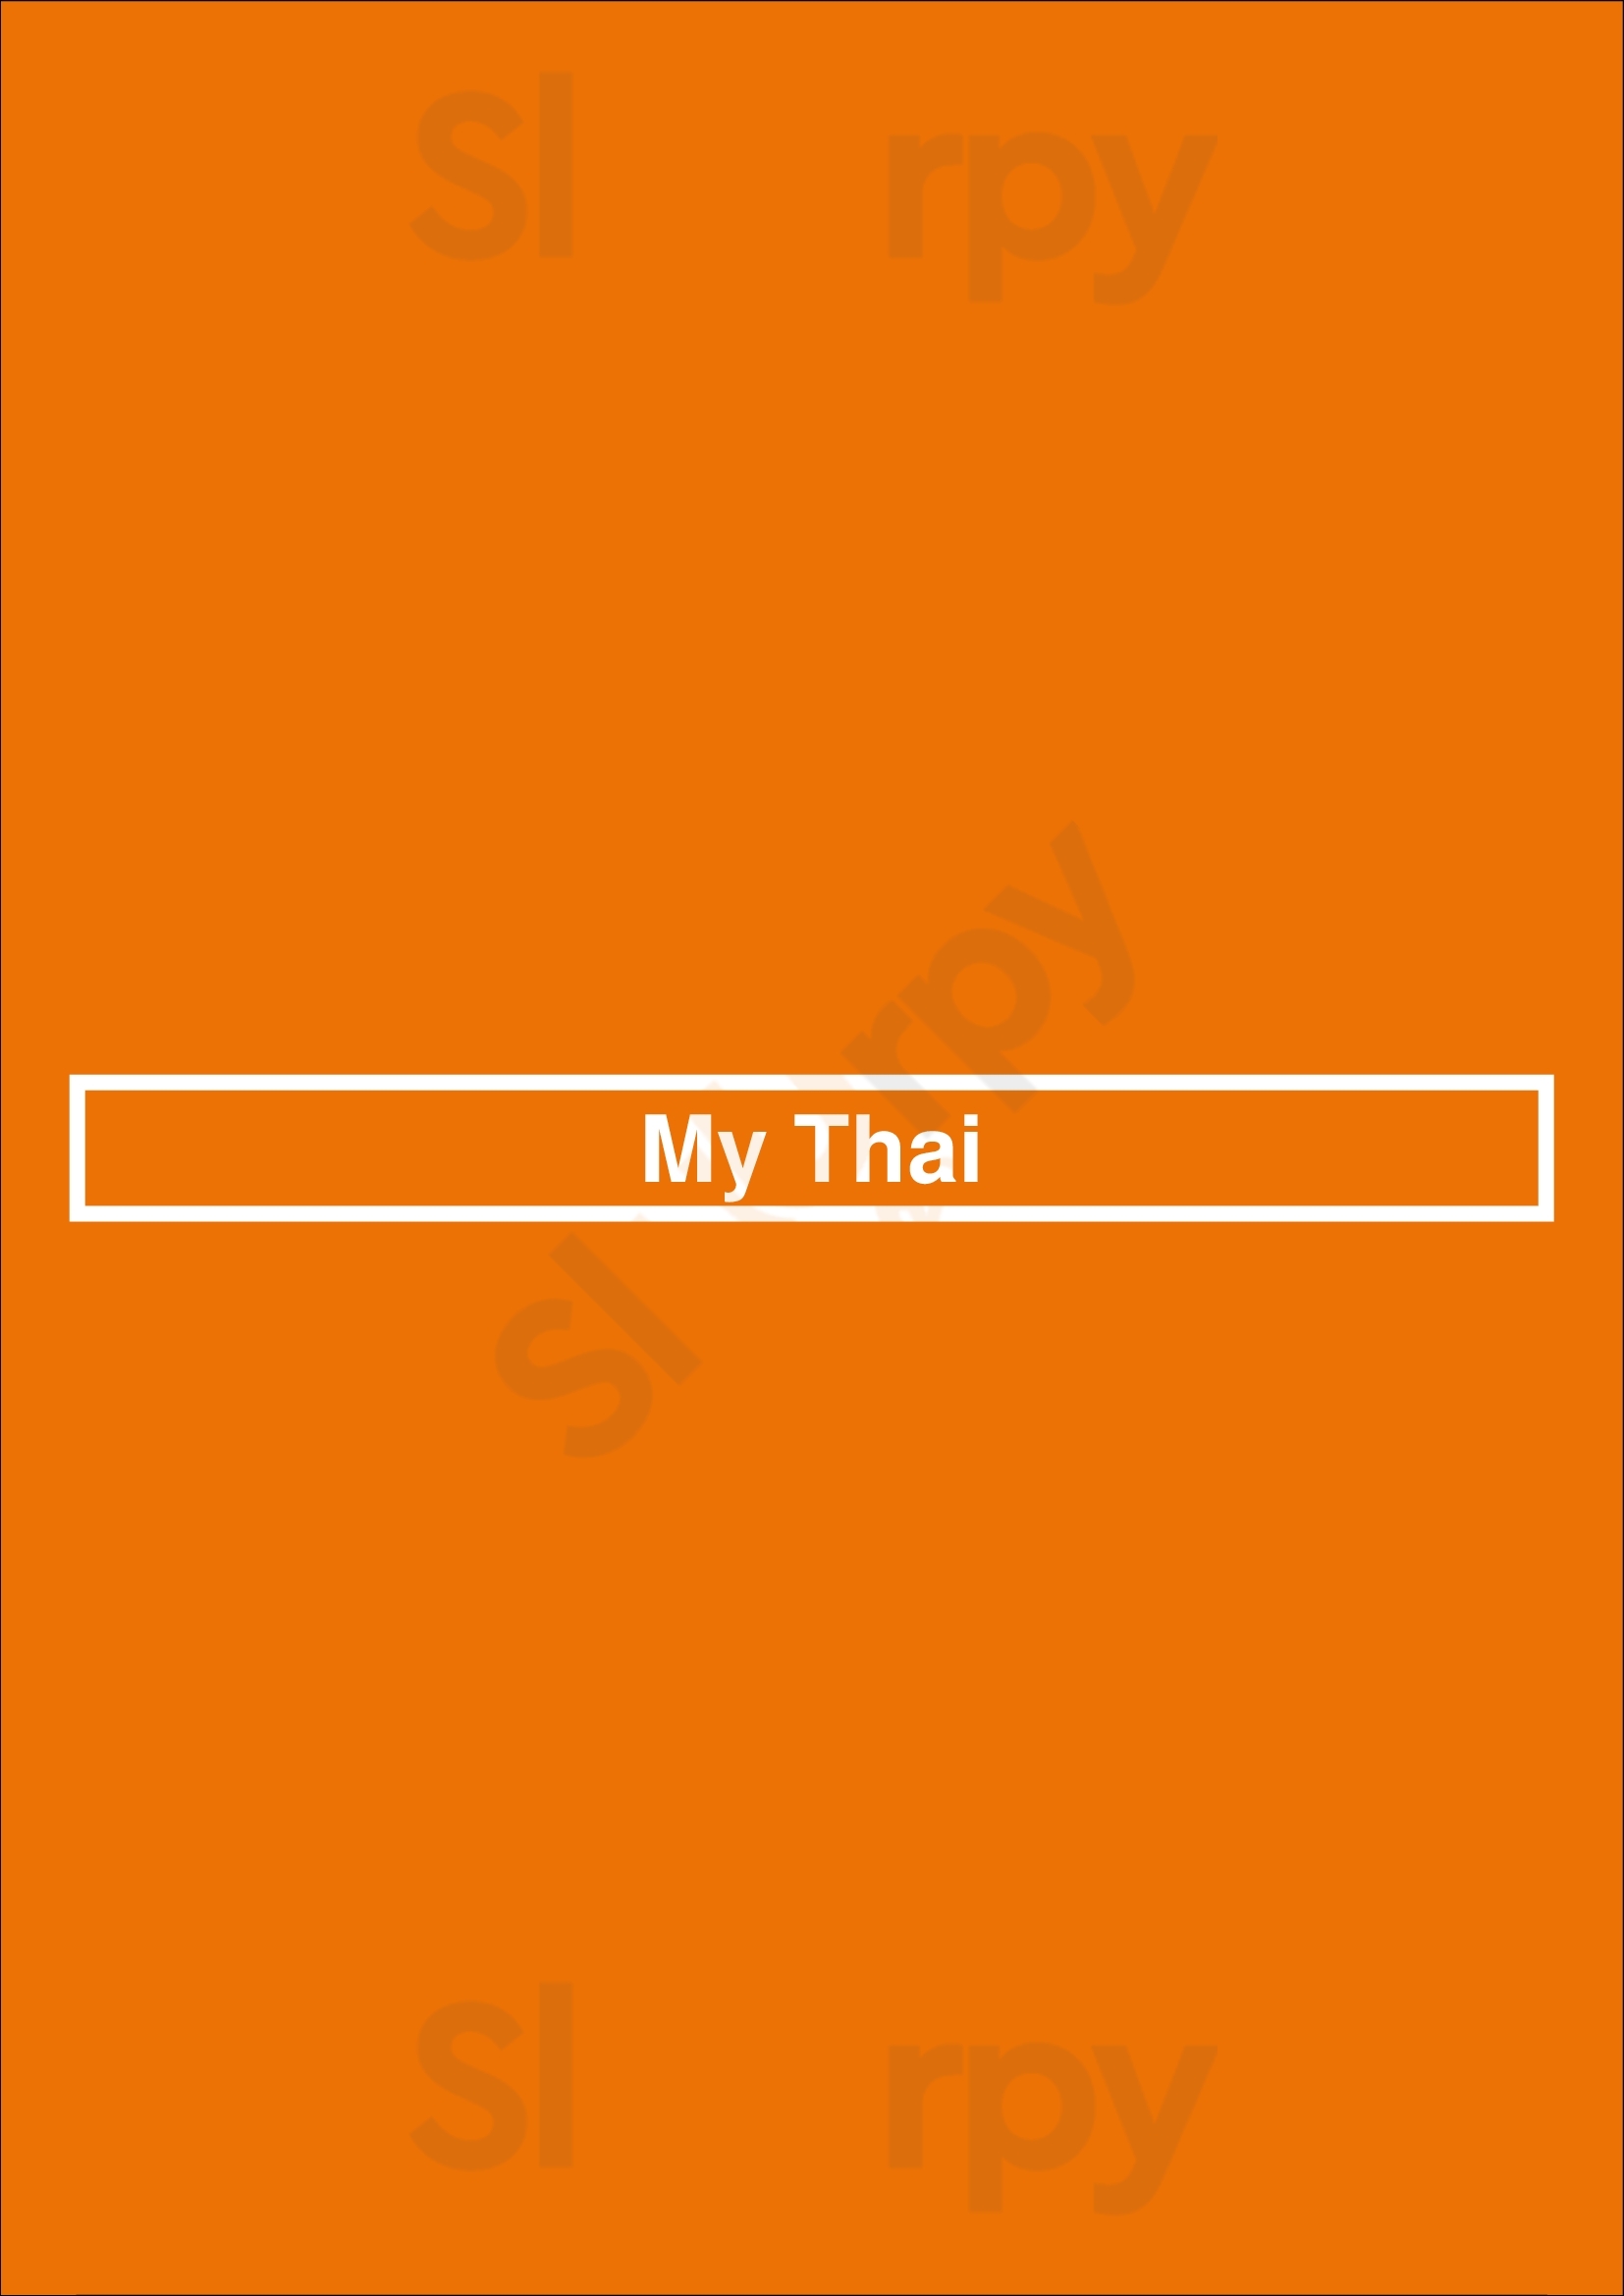 My Thai San Rafael Menu - 1